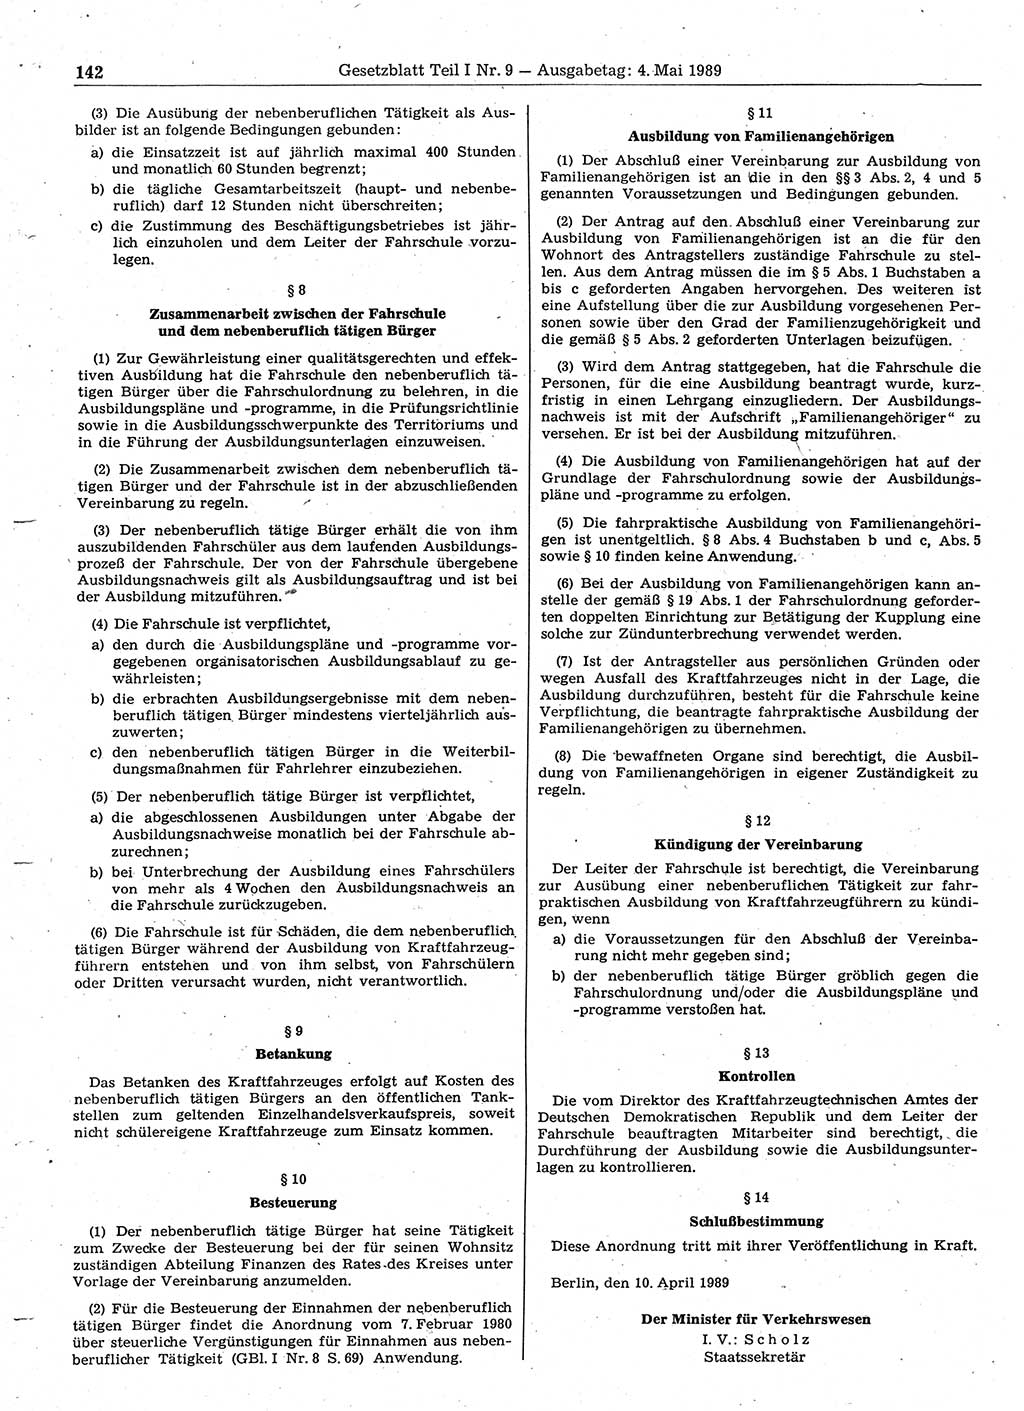 Gesetzblatt (GBl.) der Deutschen Demokratischen Republik (DDR) Teil Ⅰ 1989, Seite 142 (GBl. DDR Ⅰ 1989, S. 142)